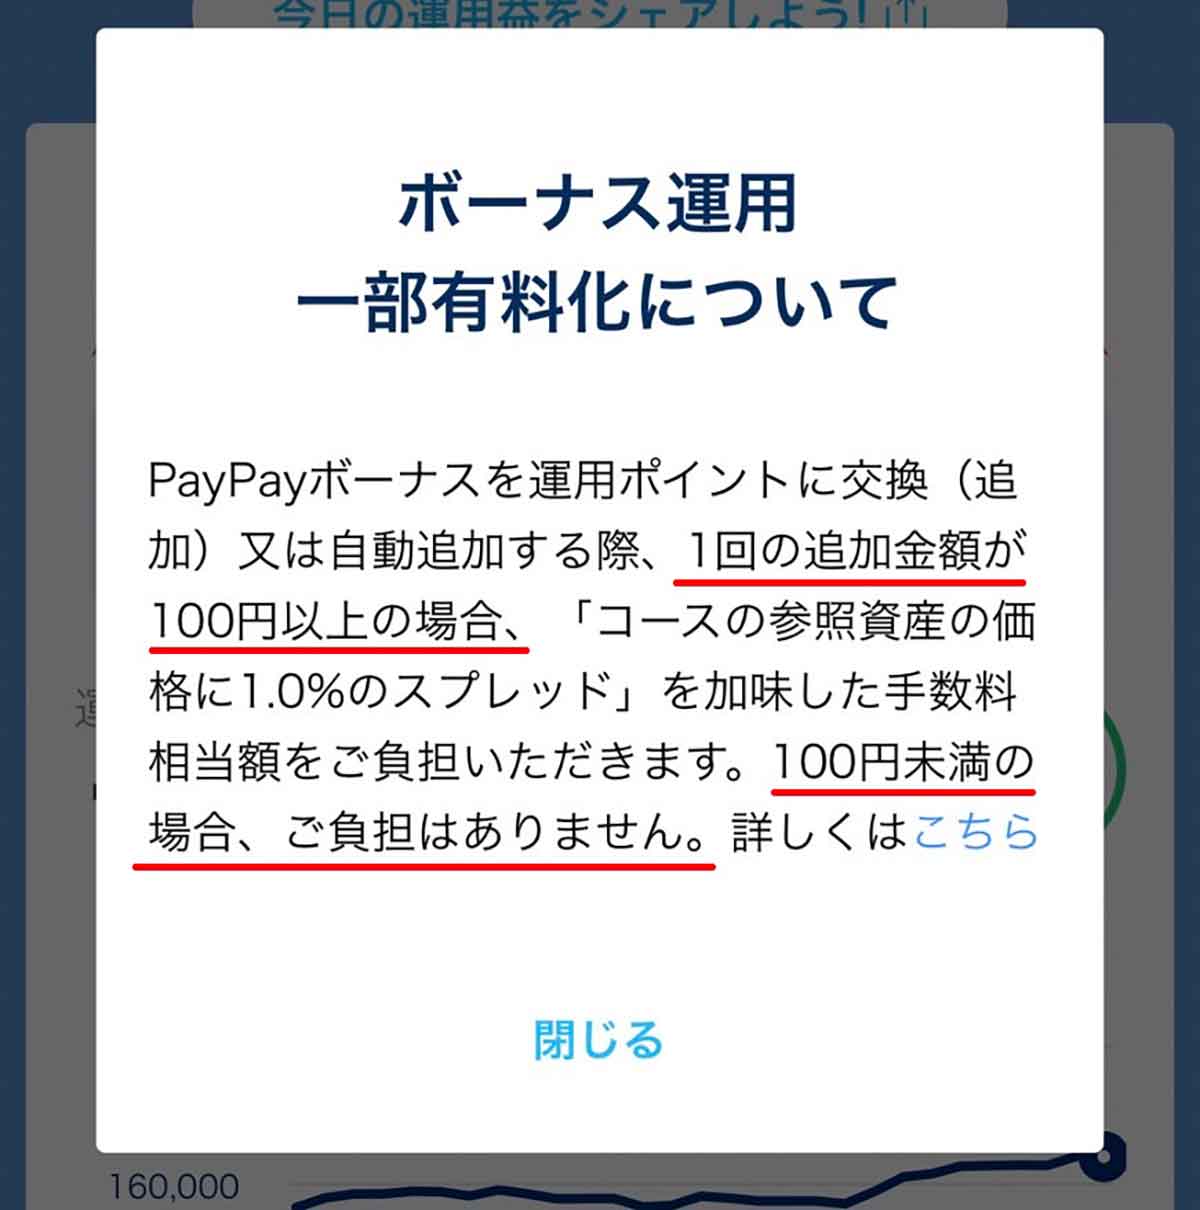 PayPayの「ボーナス運用」一部有料化